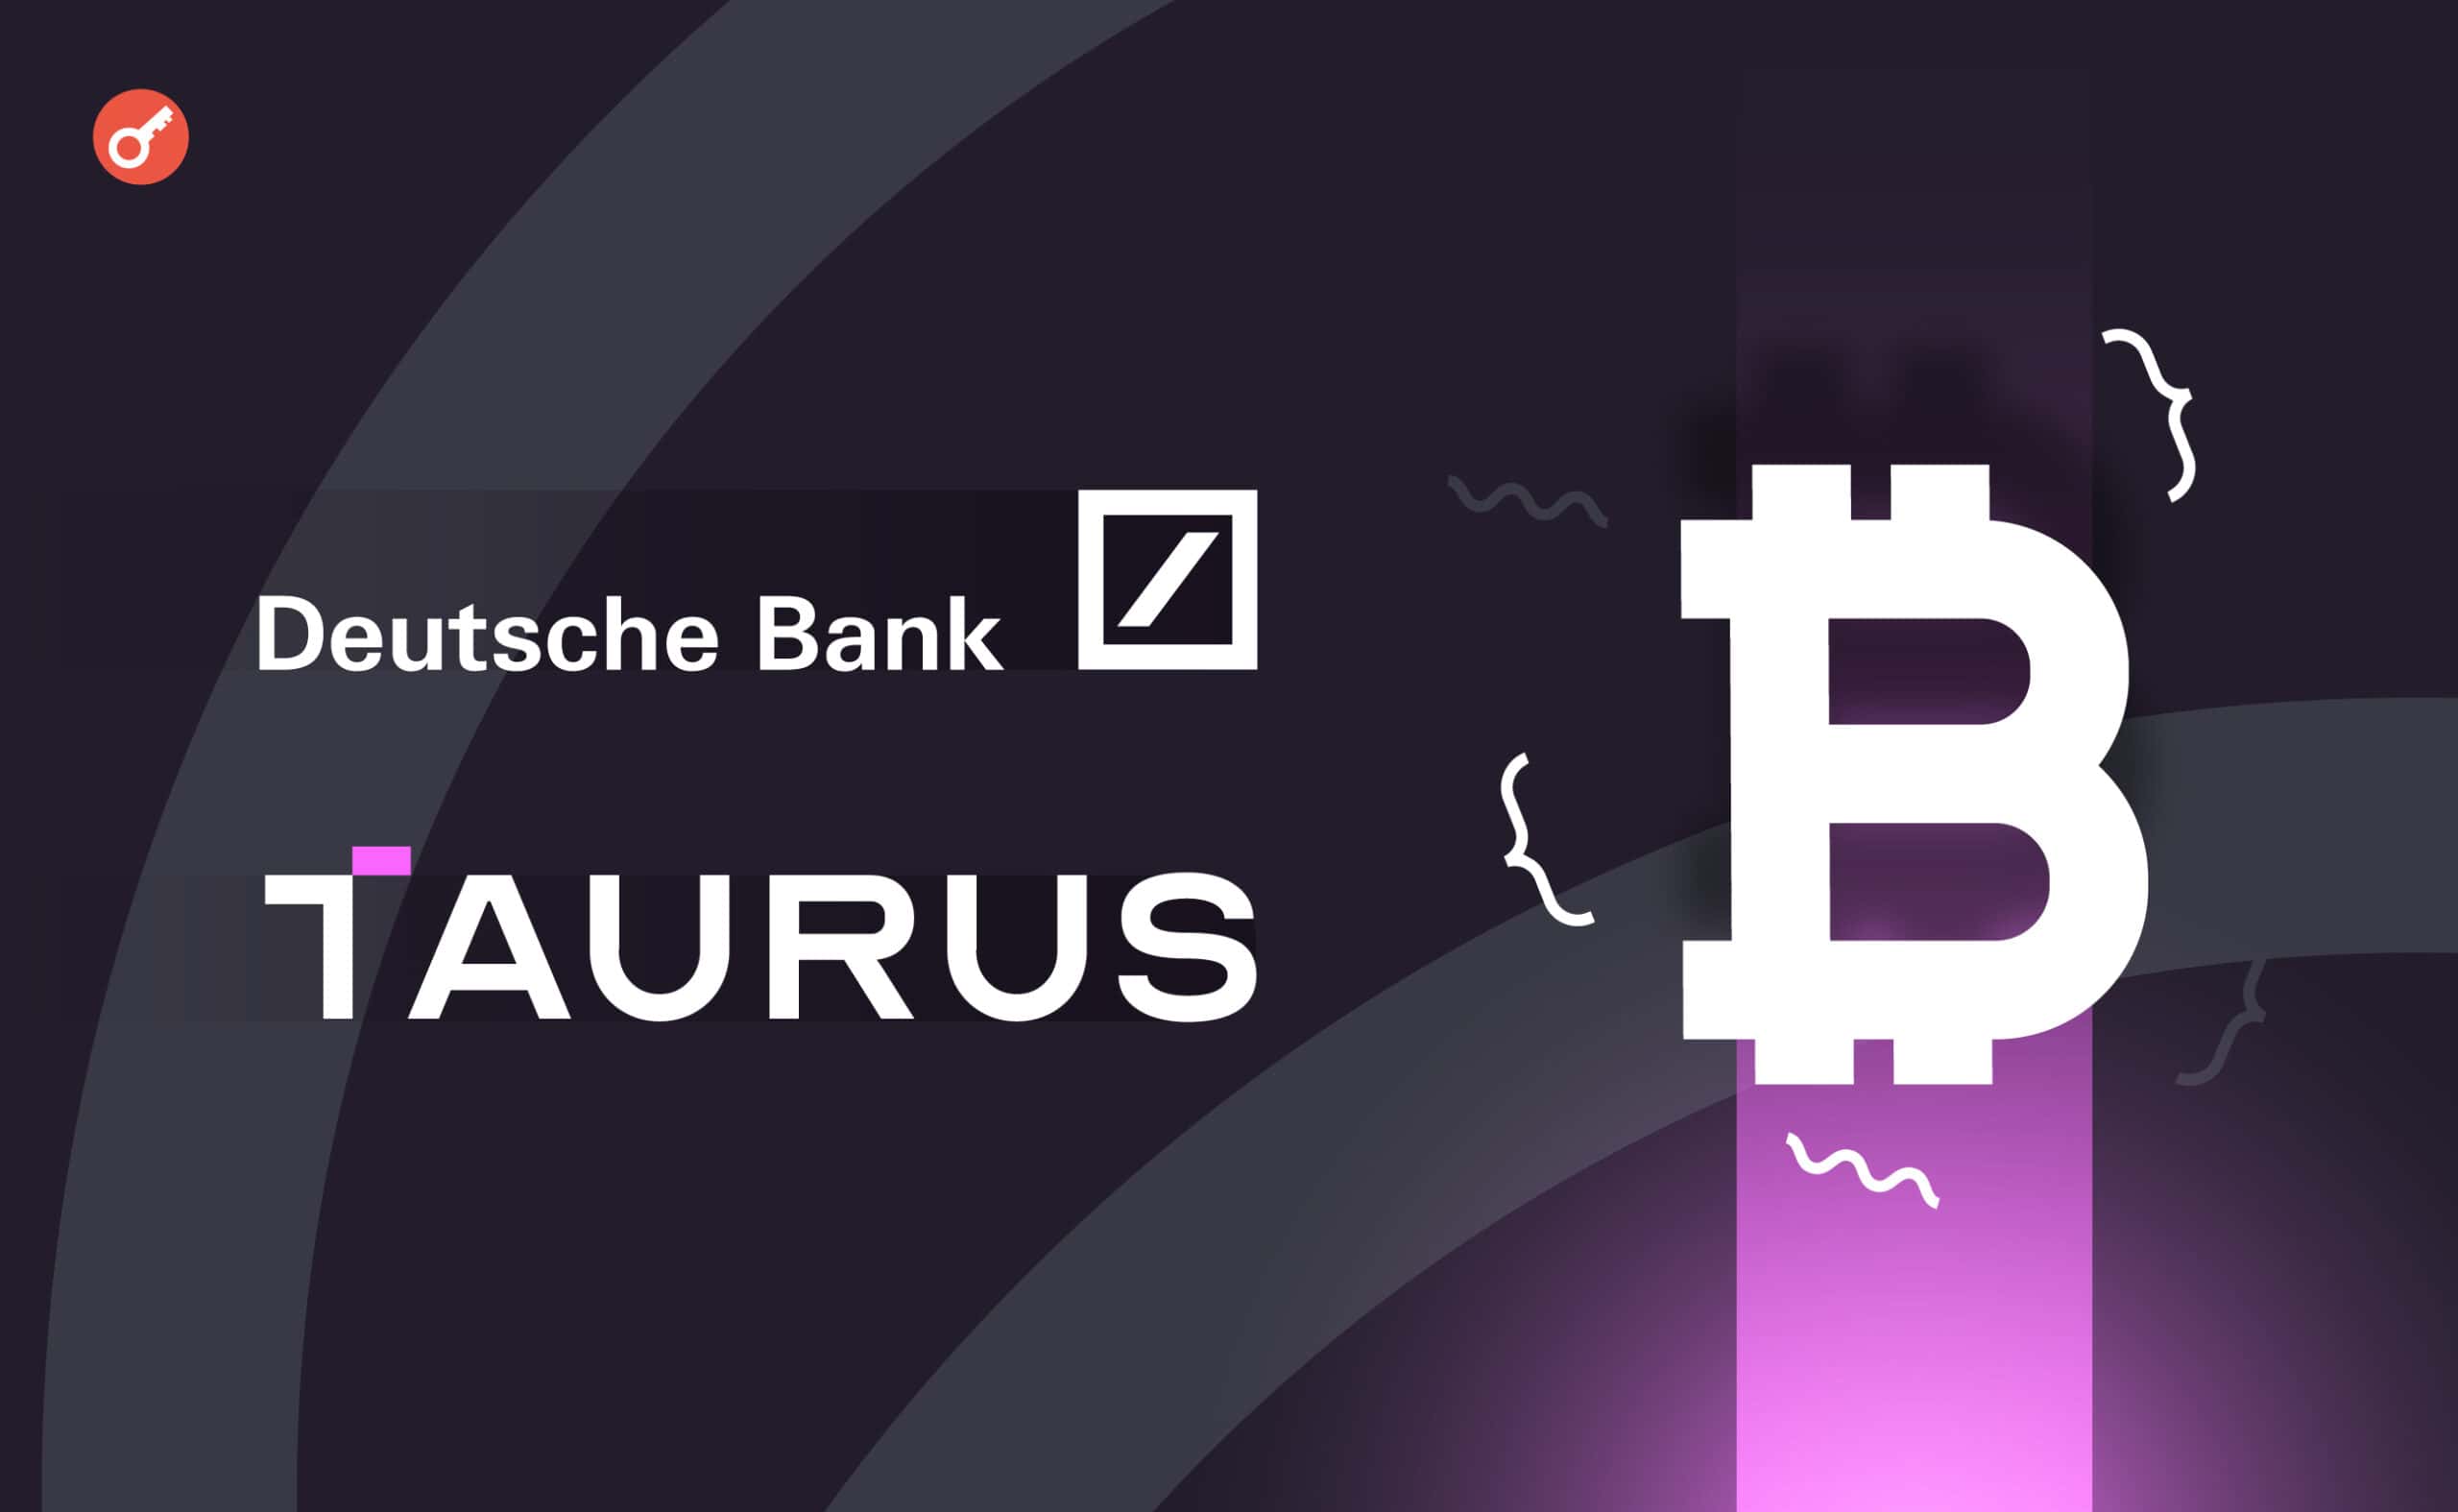 Deutsche Bank zaoferuje usługę przechowywania kryptowalut we współpracy z Taurus. Główny kolaż wiadomości.